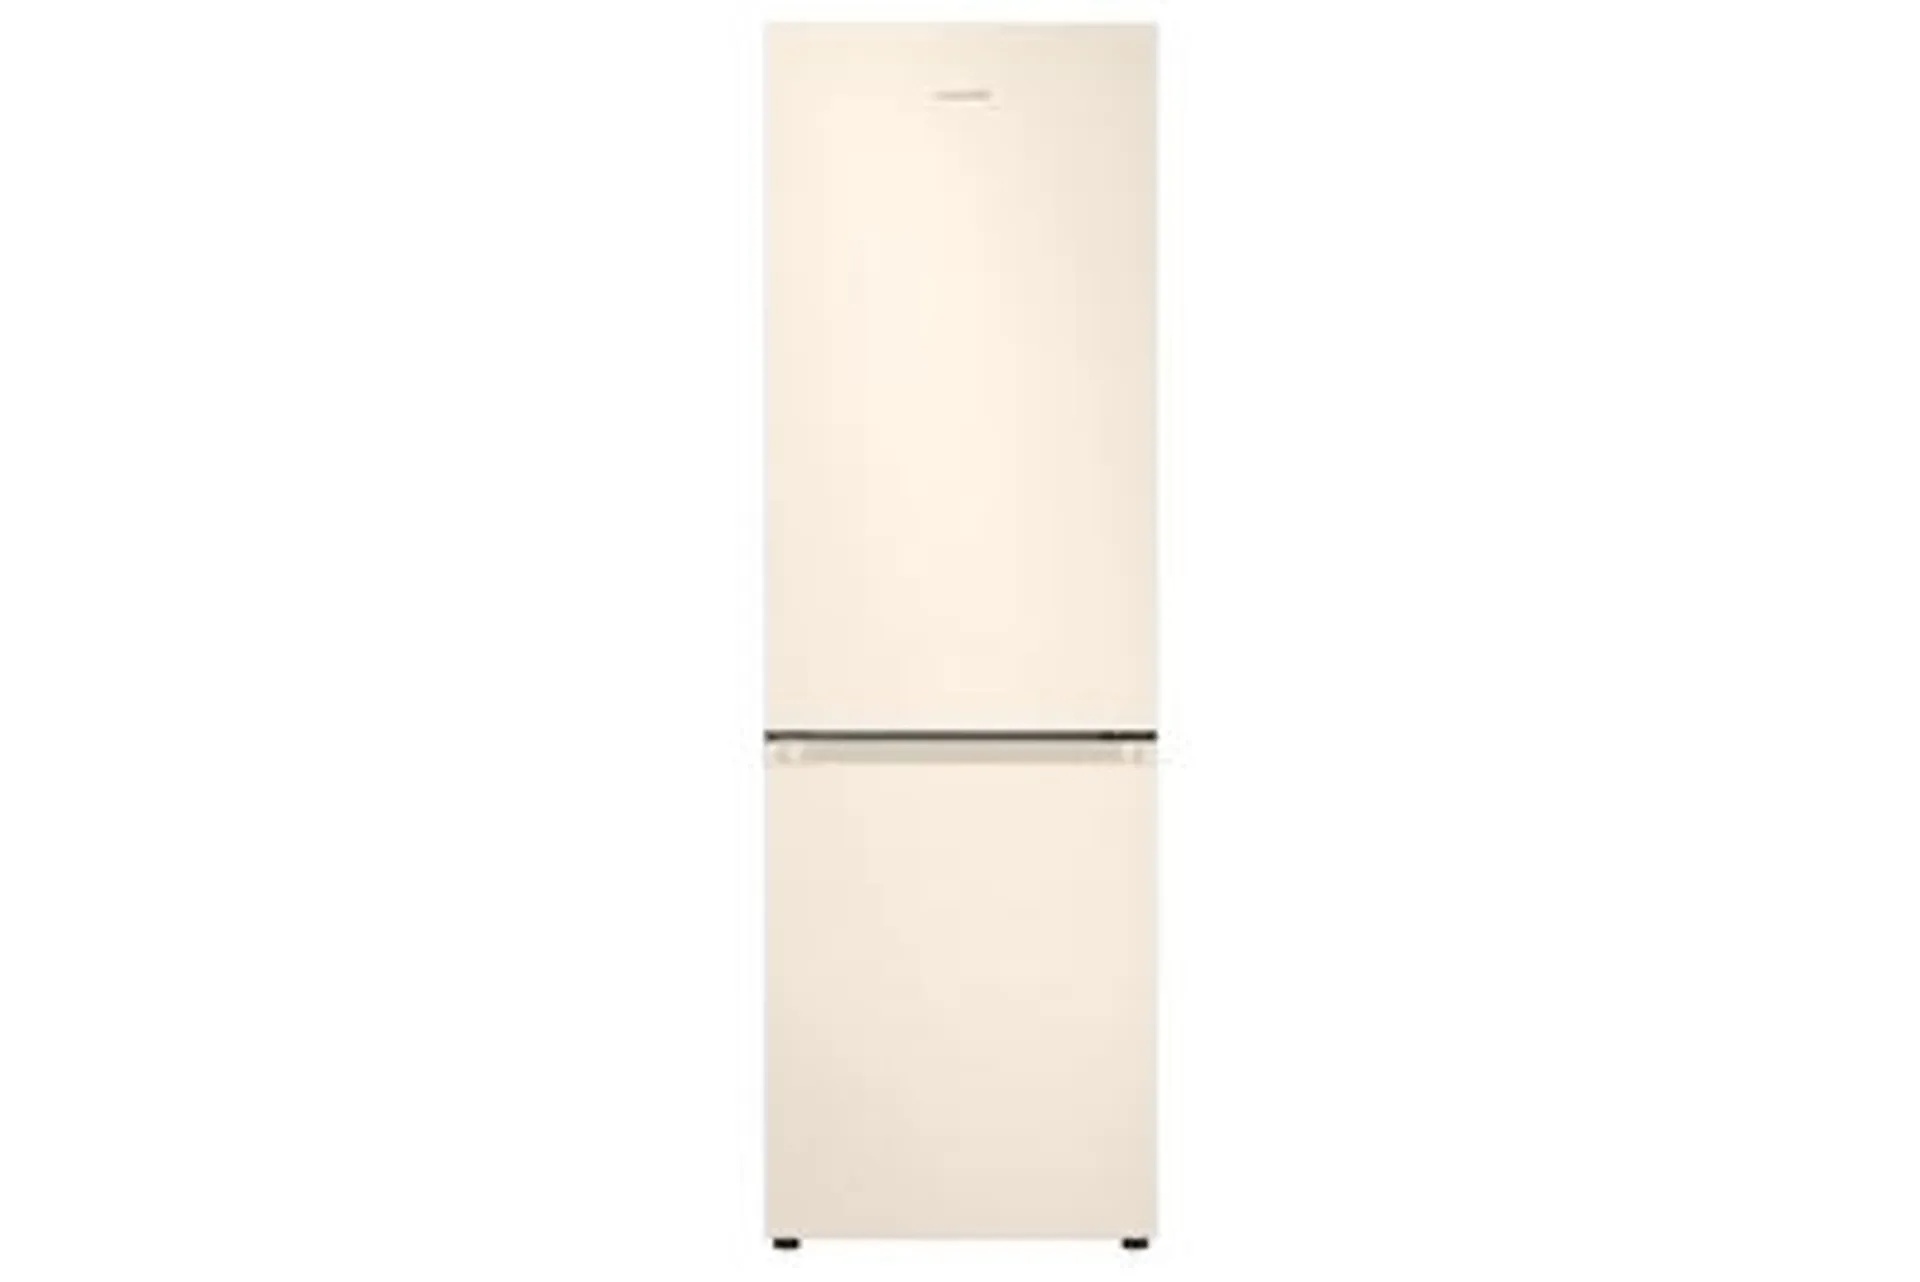 Tipologia di frigorifero Combinati - Nuova Classe efficienza energetica E - Sistema di raffreddamento No frost - Tipo di Ripiani Cristallo/Vetro